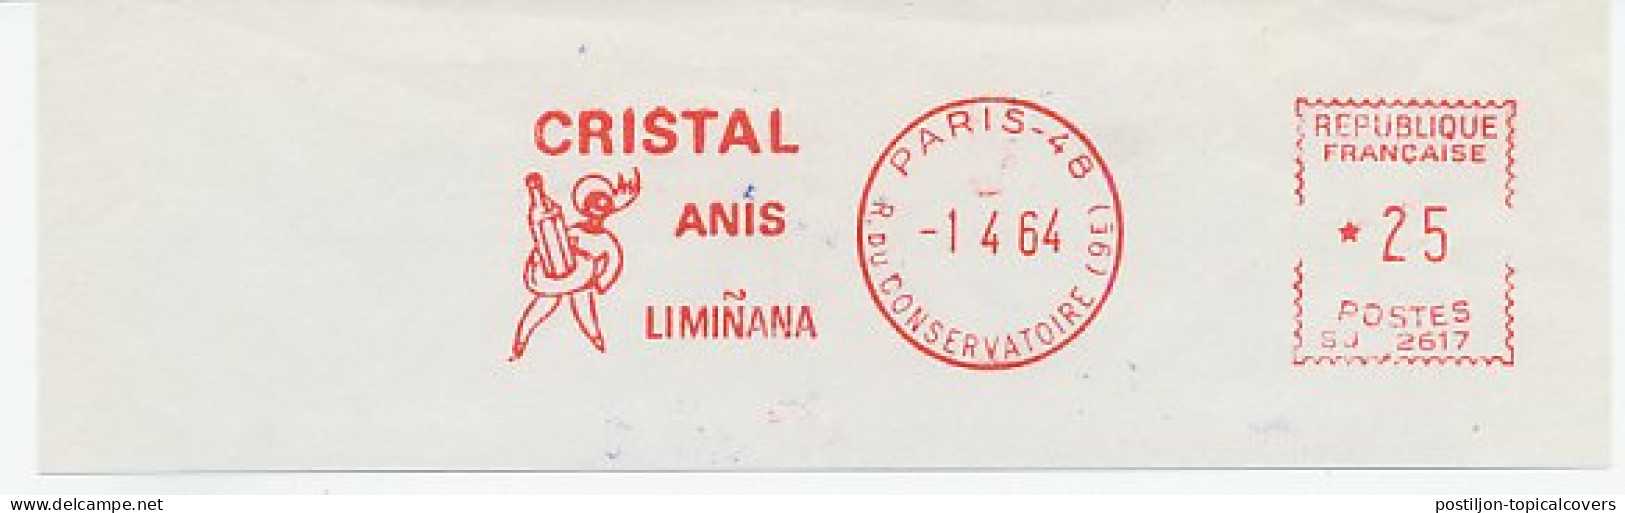 Meter Cut France 1964 Aperitif - Liqueur - Cristal Anis - Wines & Alcohols